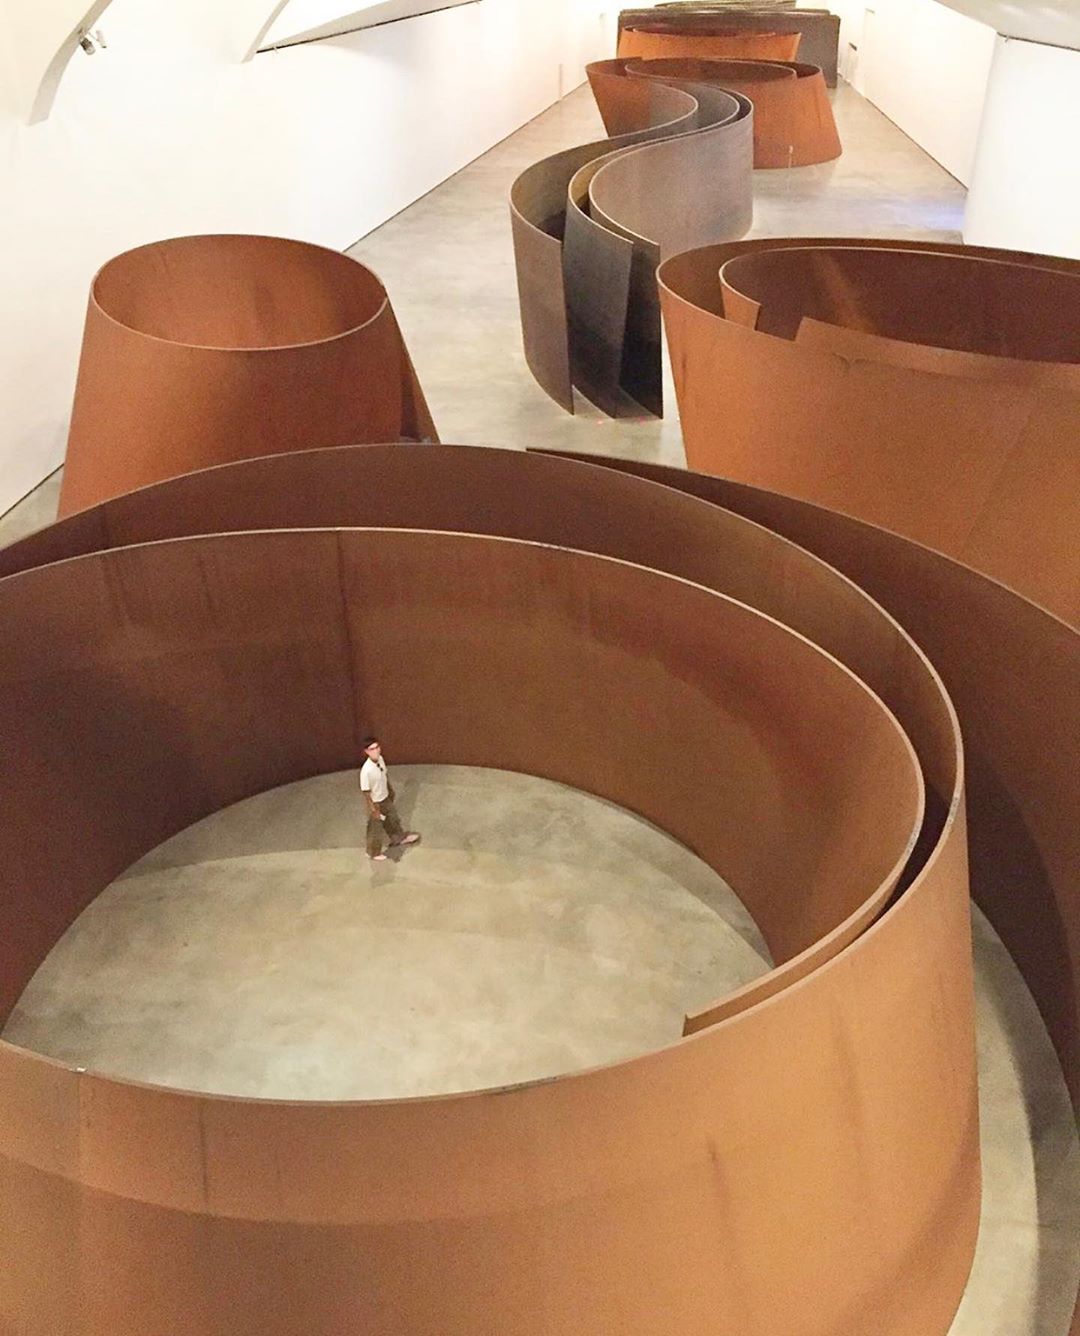 USHATÁVA - Американский художник-минималист Ричард Серра (Richard Serra), известный некоторыми искусствоведами как один из величайших скульпторов 20-го века эпохи постмодернизма, наиболее известен...